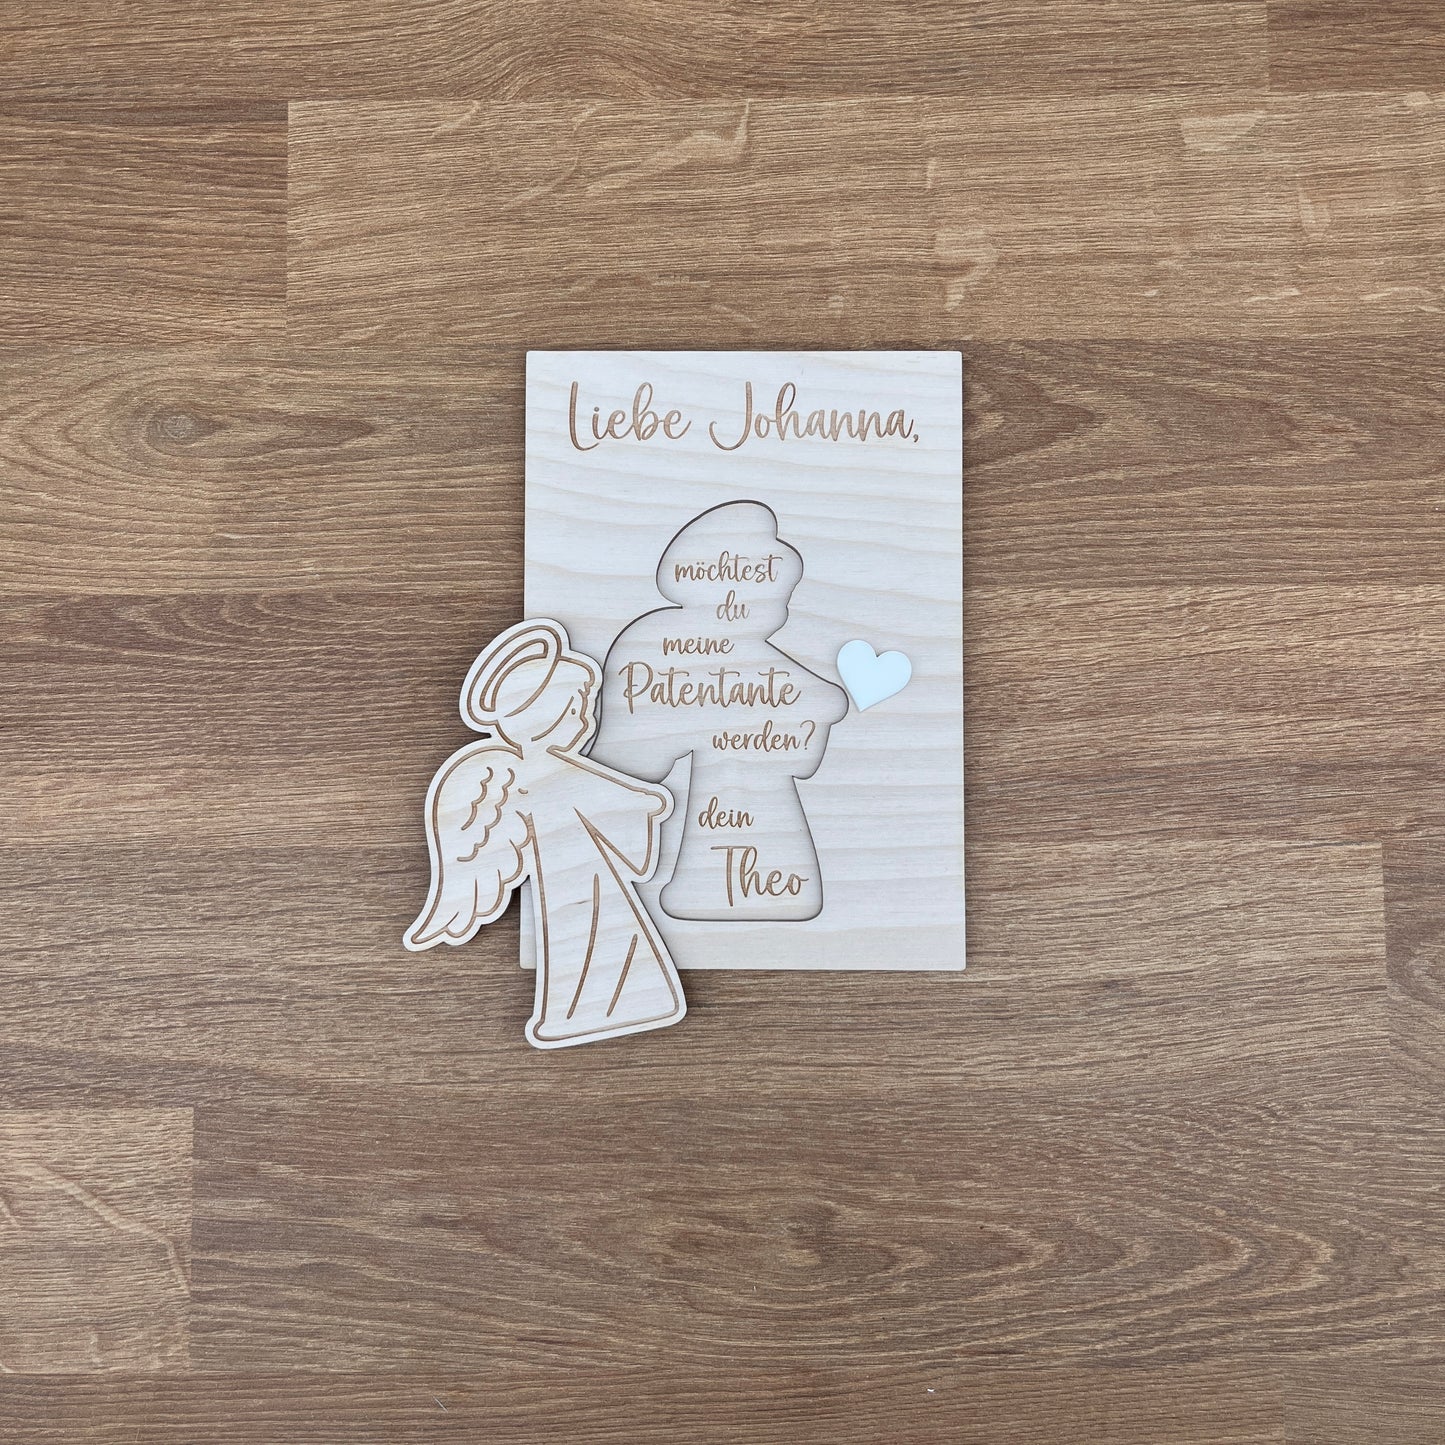 Paten fragen gravierter Engel mit Herz Postkartenformat Variante